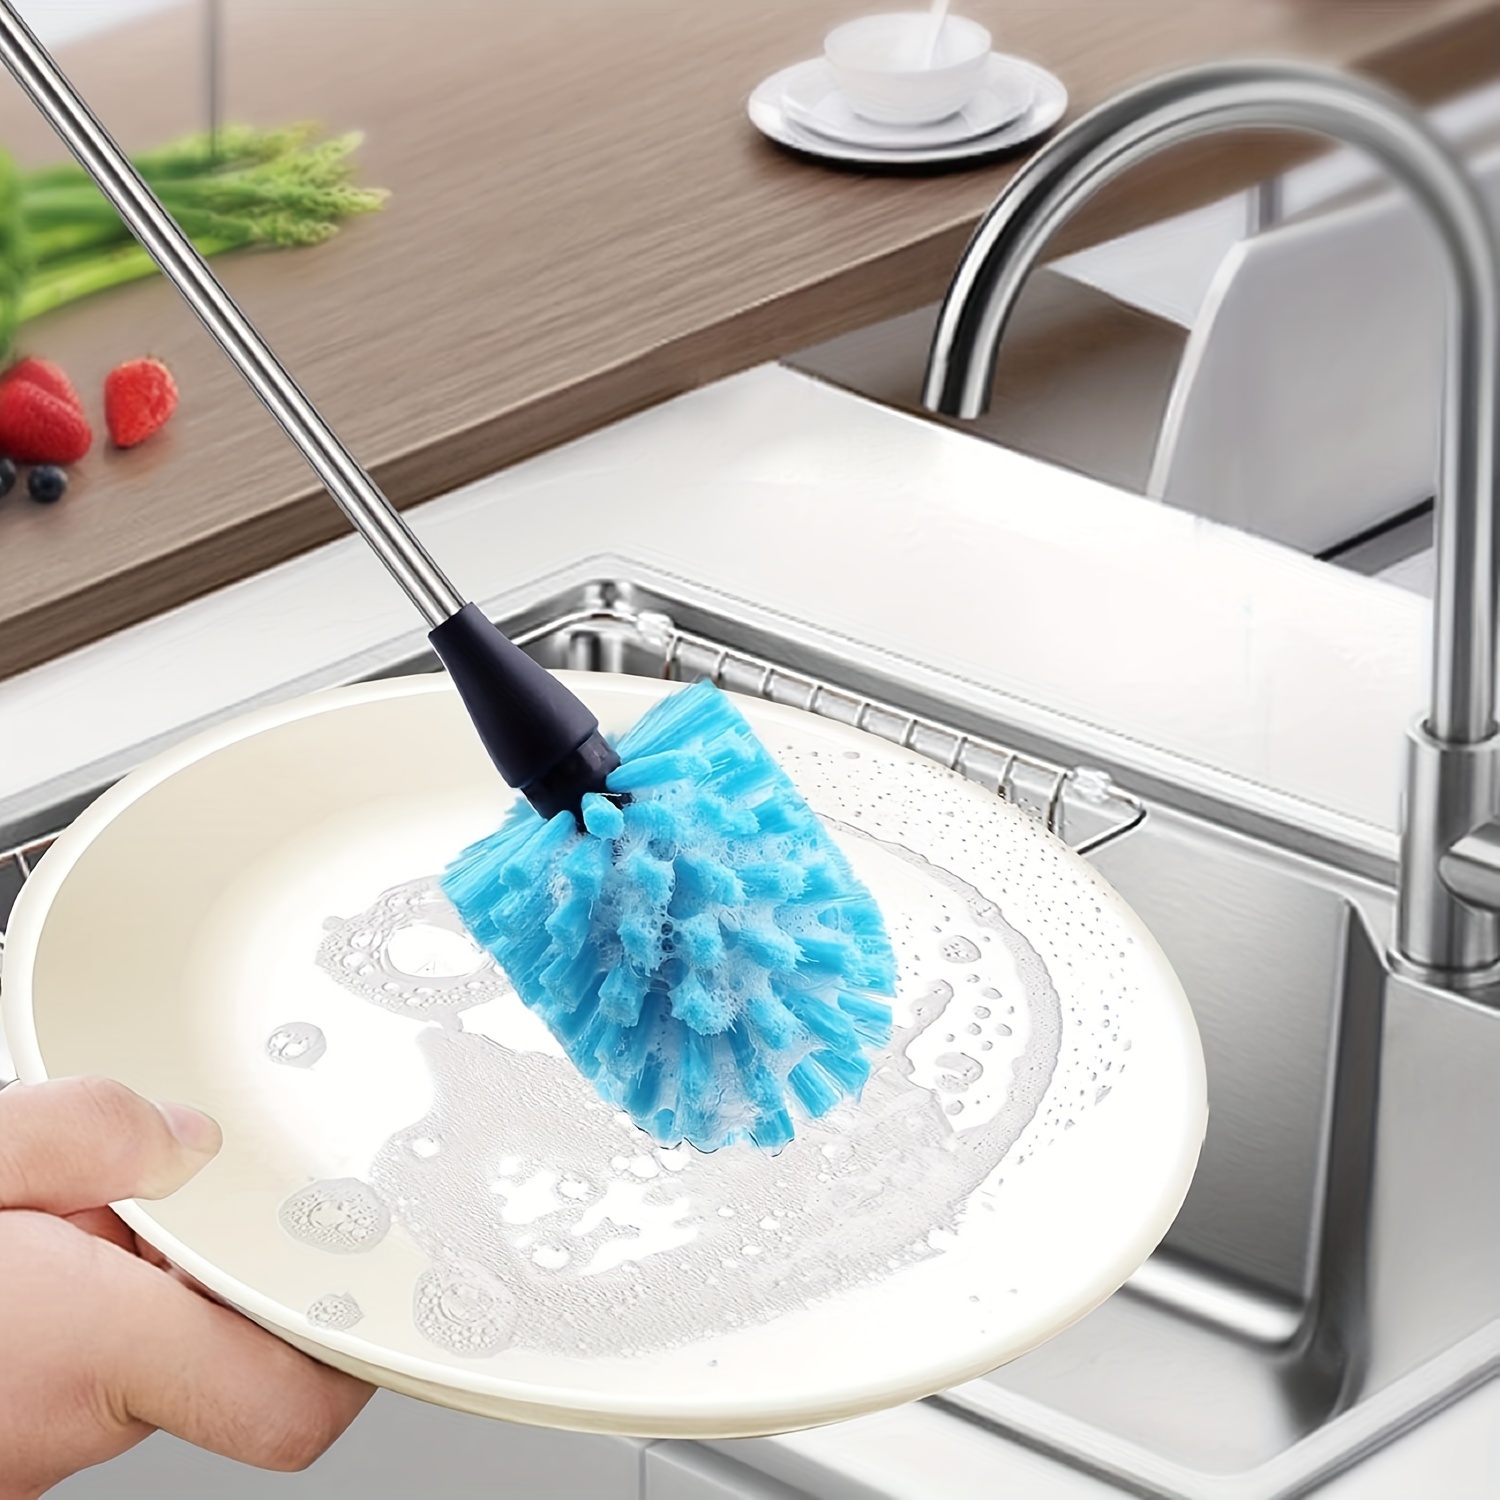 Dish Brush Set of 3 with Bottle Water Brush, Dish Scrub Brush and